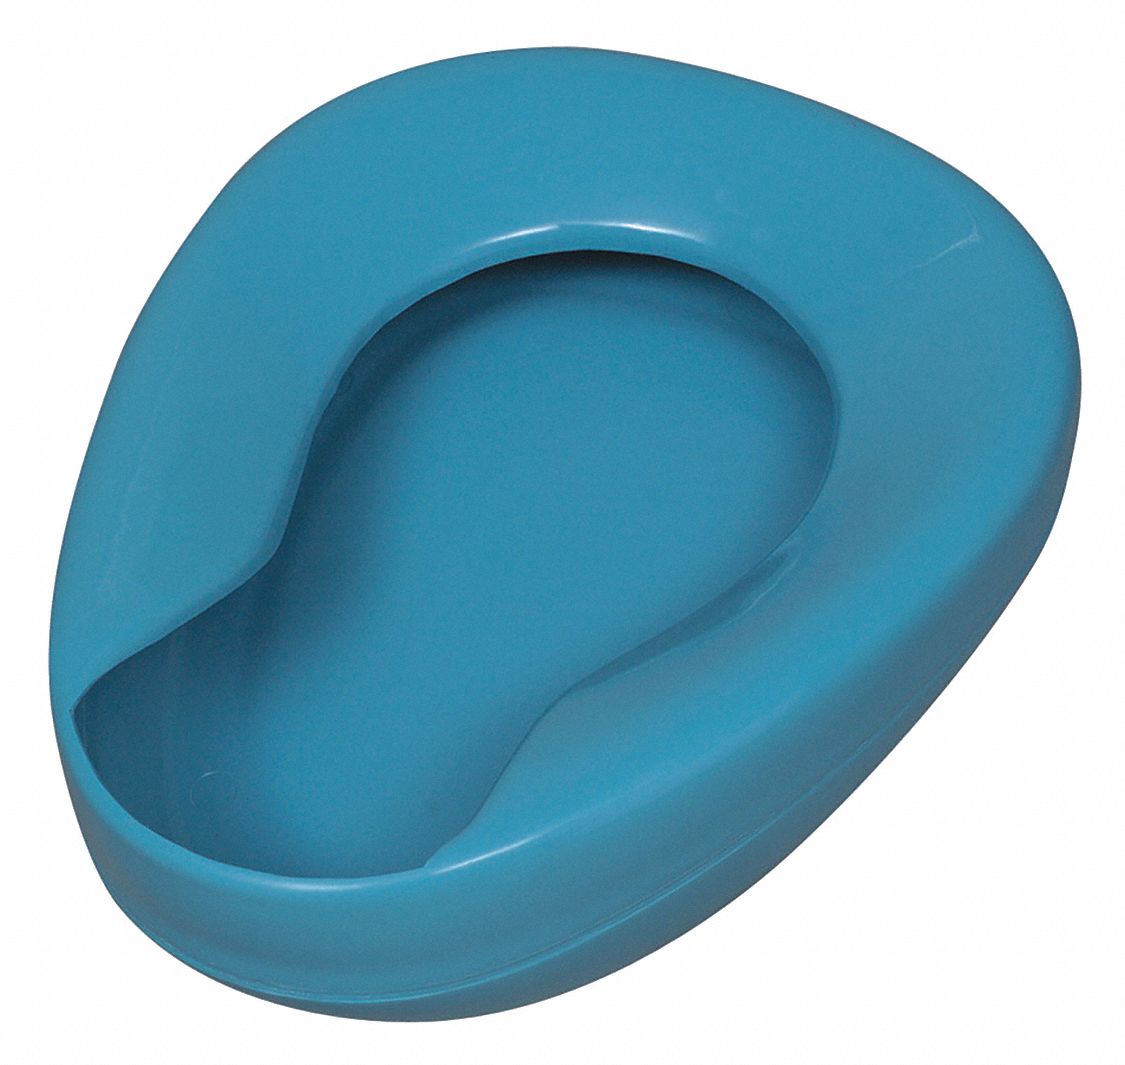 34KY16 - Autoclavable Bedpan Blue Plastic